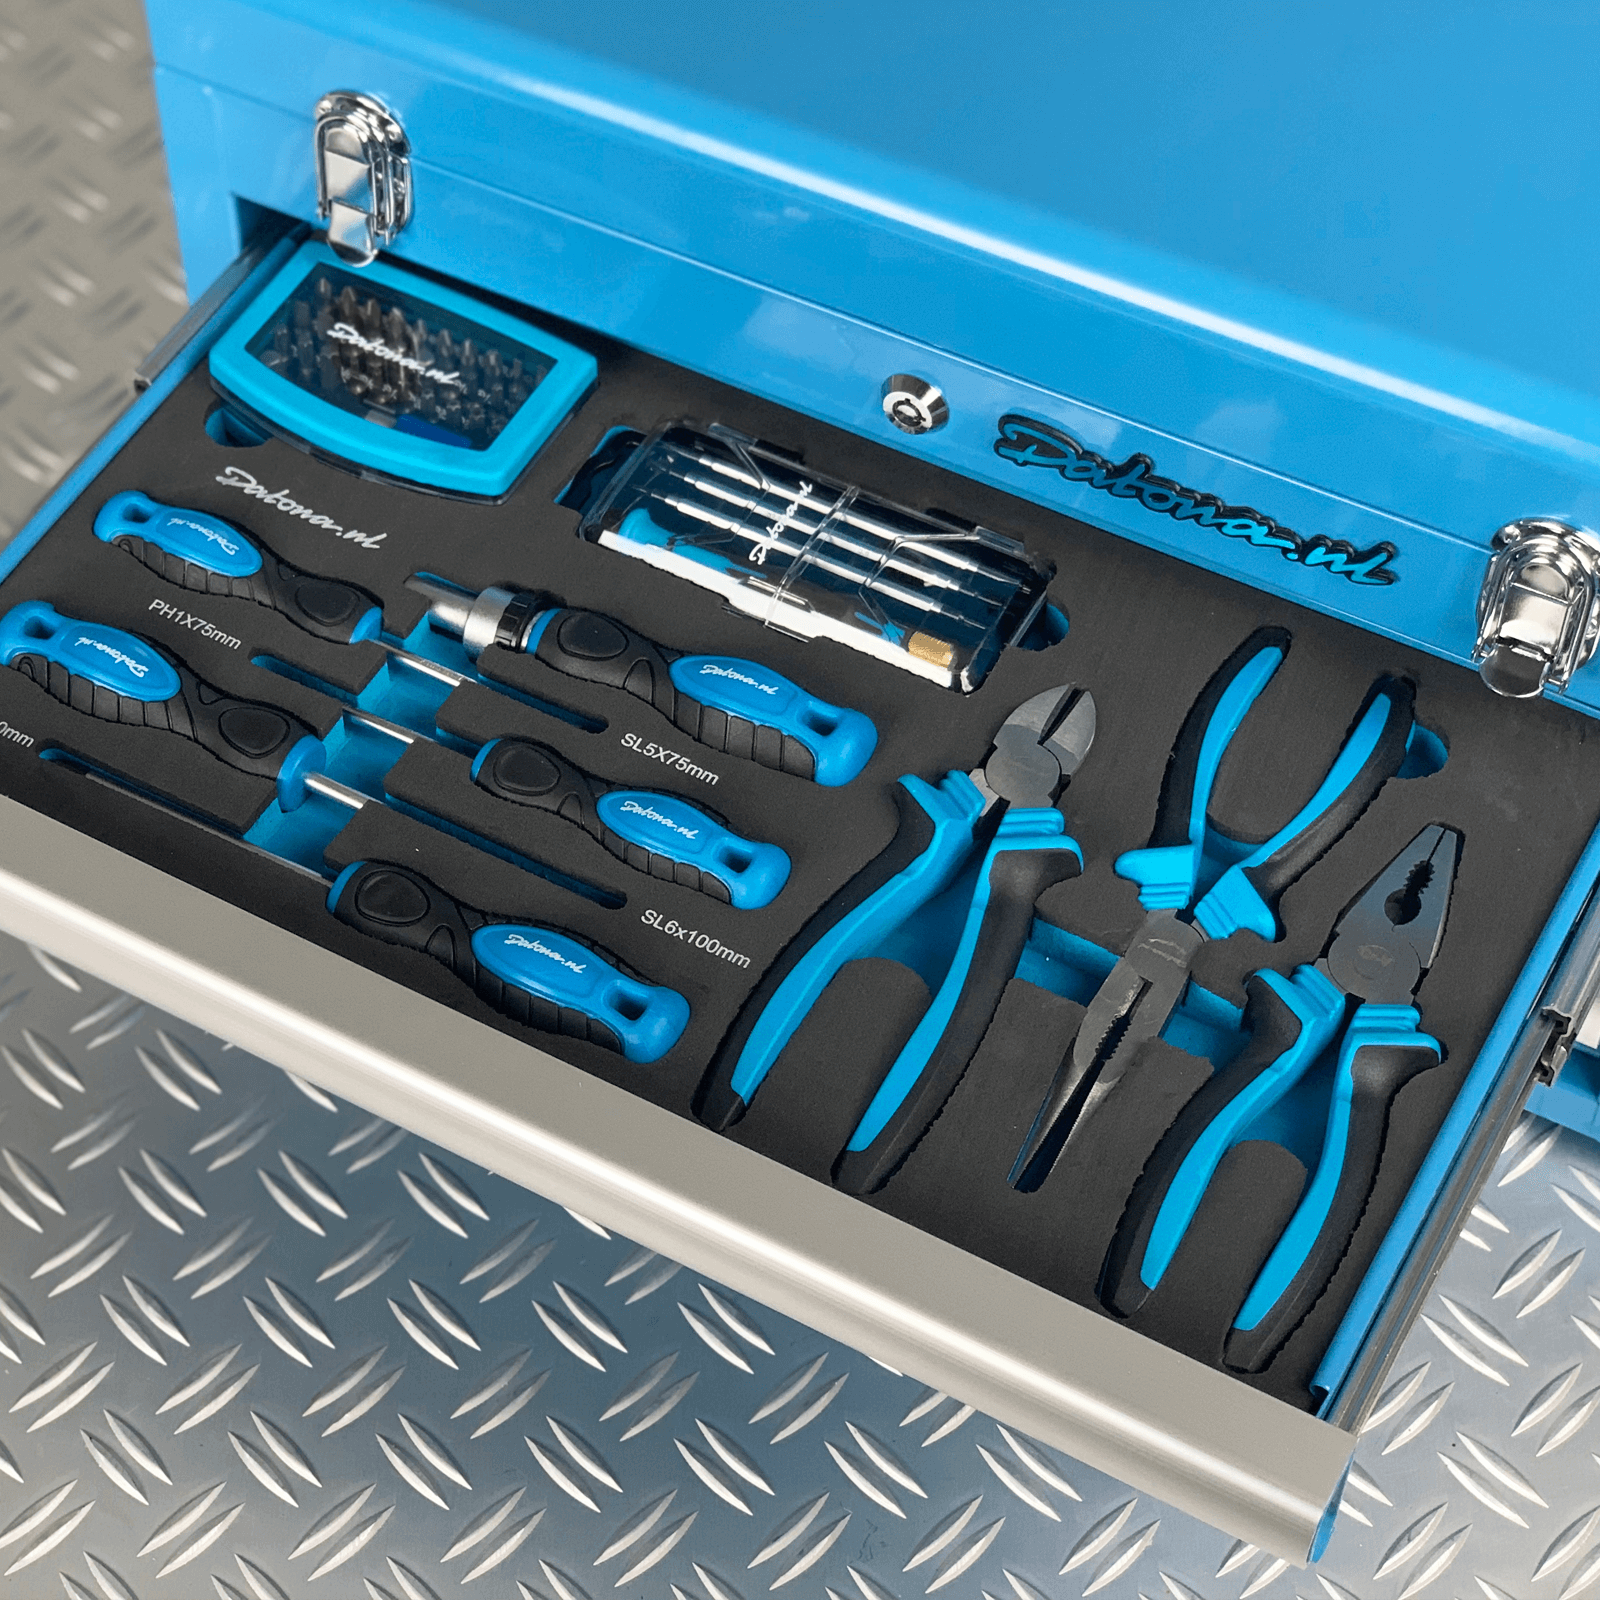 Caisse à outils avec 3 tiroirs – bleue